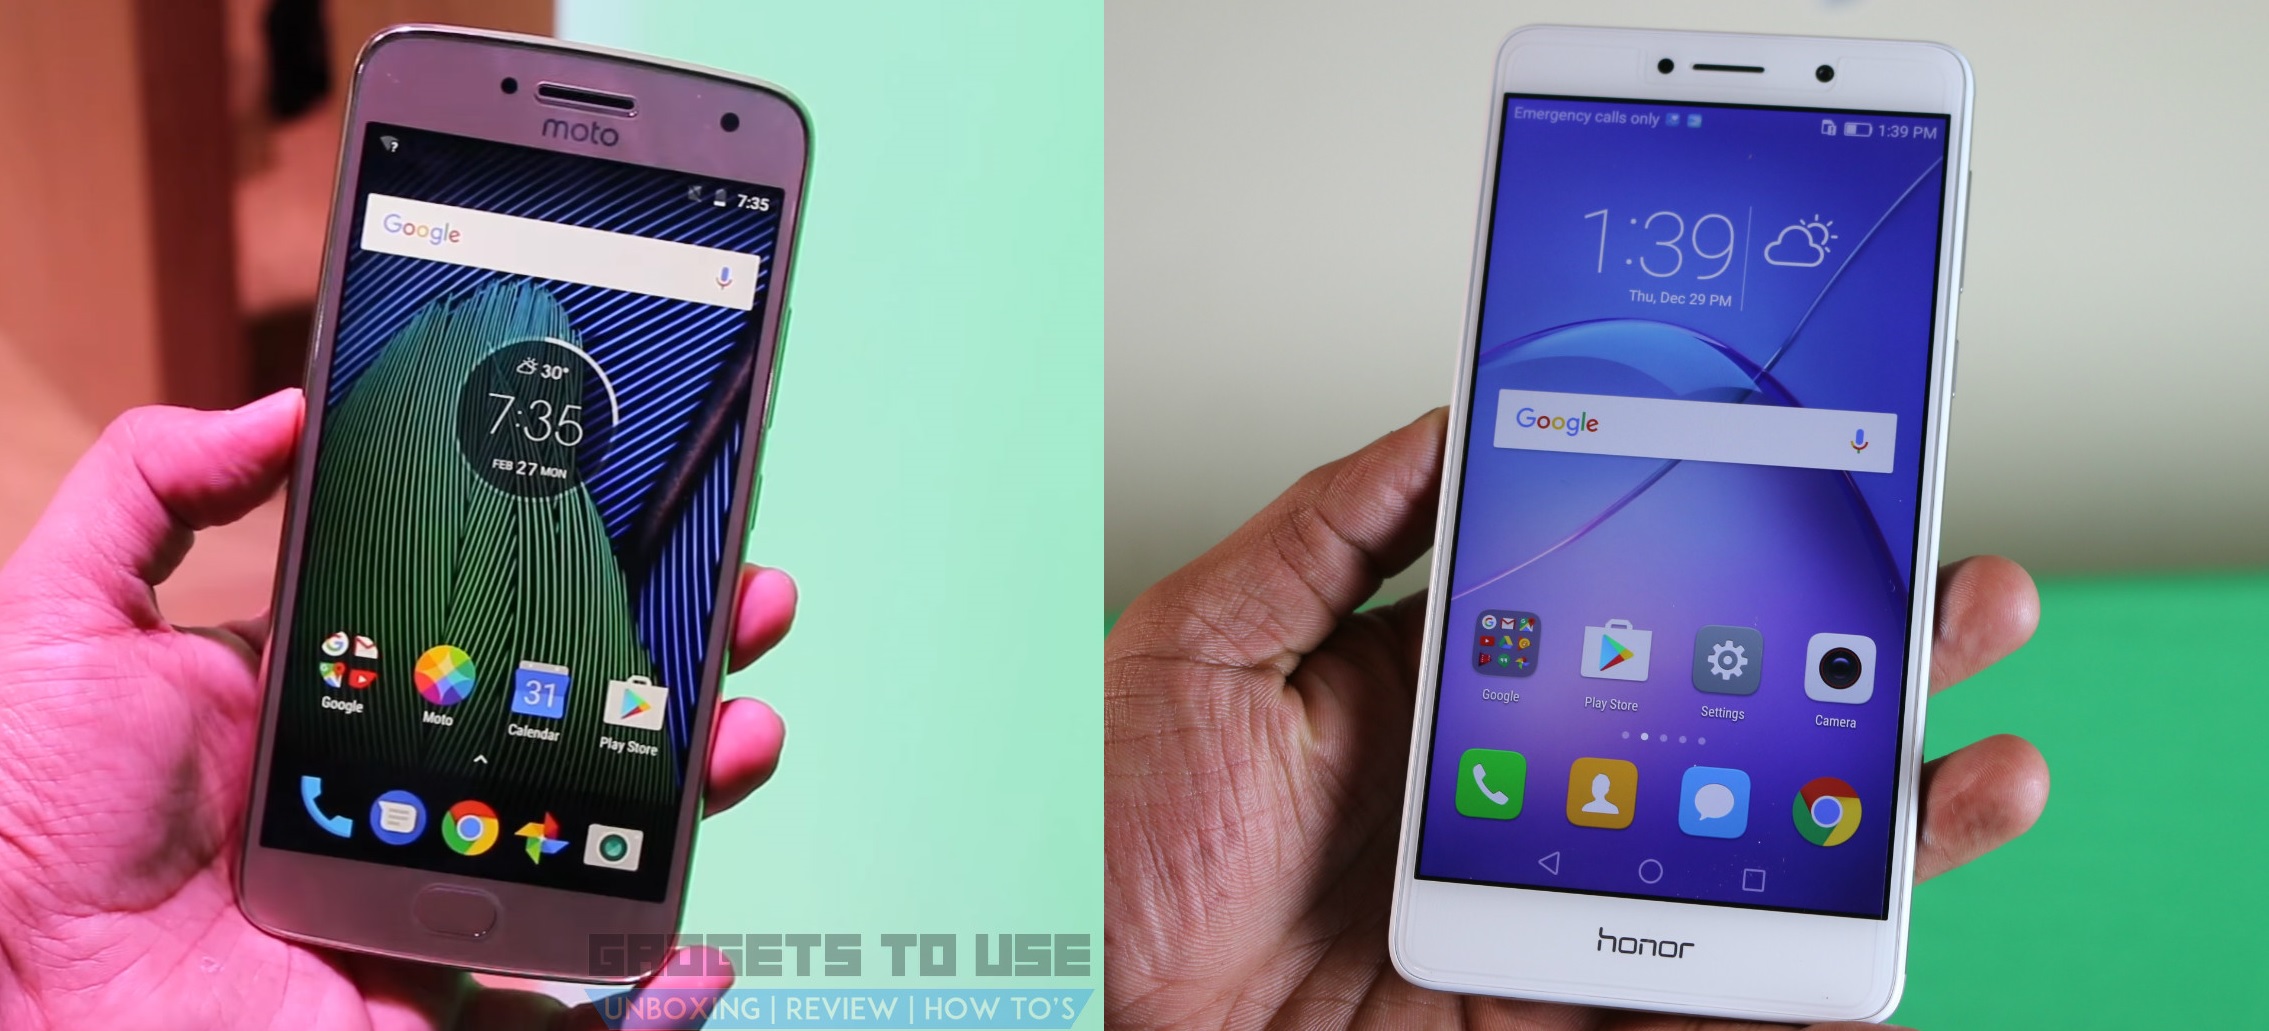 מוטורולה מוטו G5 פלוס לעומת Huawei Honor 6X סקירת השוואה מהירה